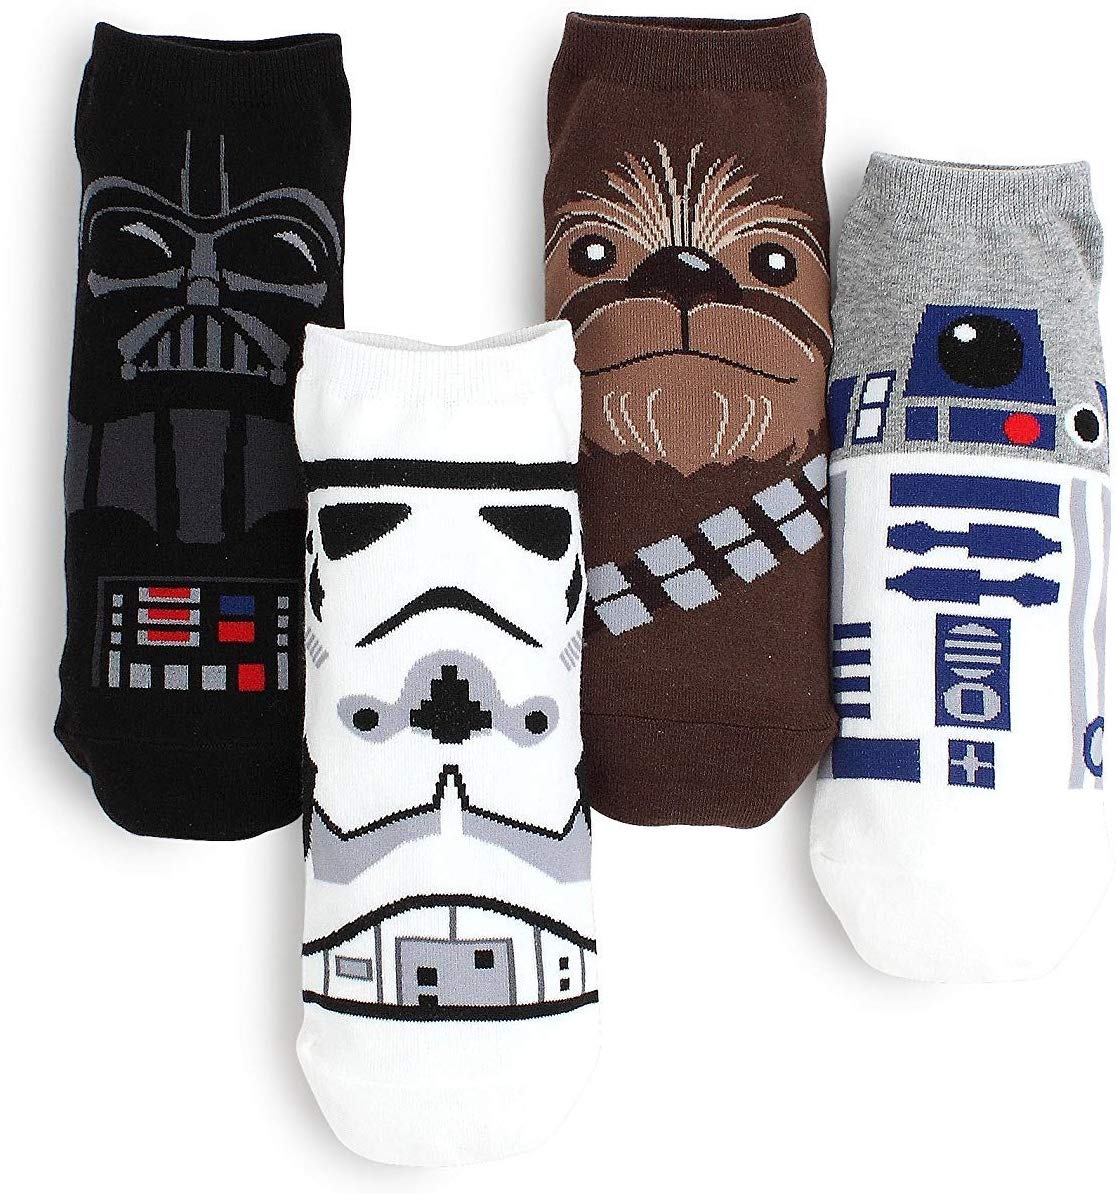 Star Wars Socks - oddgifts.com